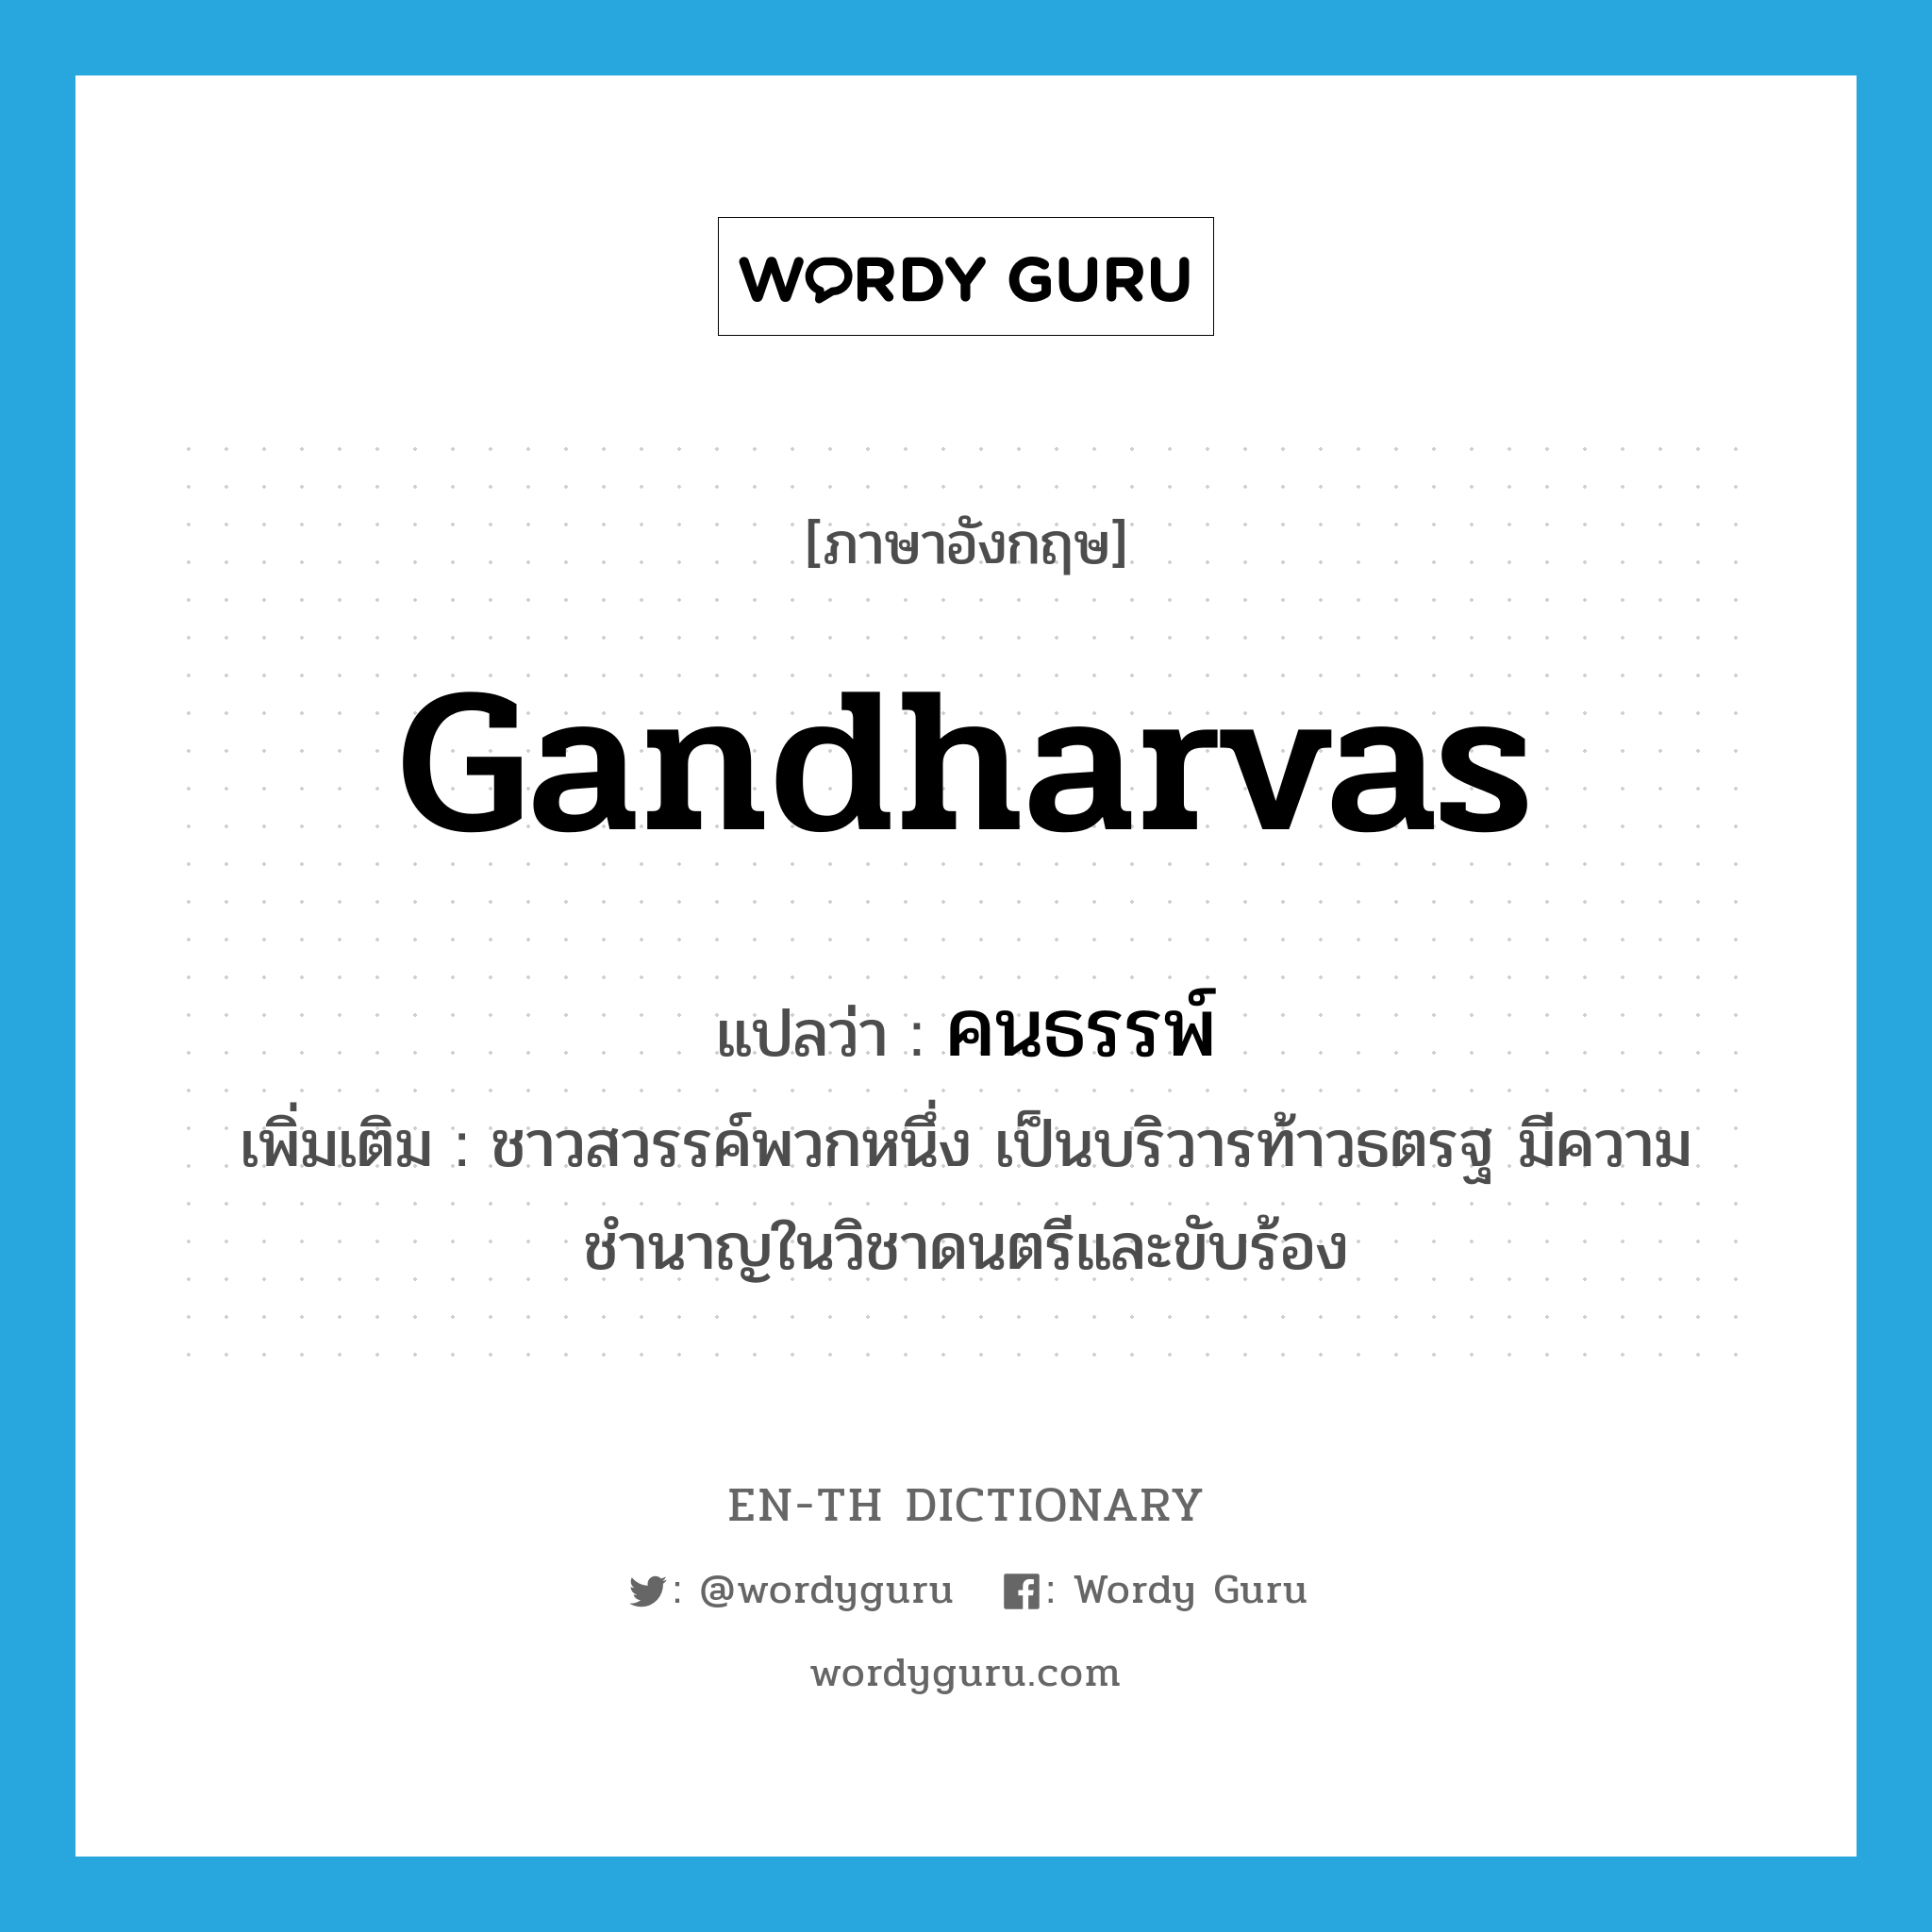 Gandharvas แปลว่า?, คำศัพท์ภาษาอังกฤษ Gandharvas แปลว่า คนธรรพ์ ประเภท N เพิ่มเติม ชาวสวรรค์พวกหนึ่ง เป็นบริวารท้าวธตรฐ มีความชำนาญในวิชาดนตรีและขับร้อง หมวด N